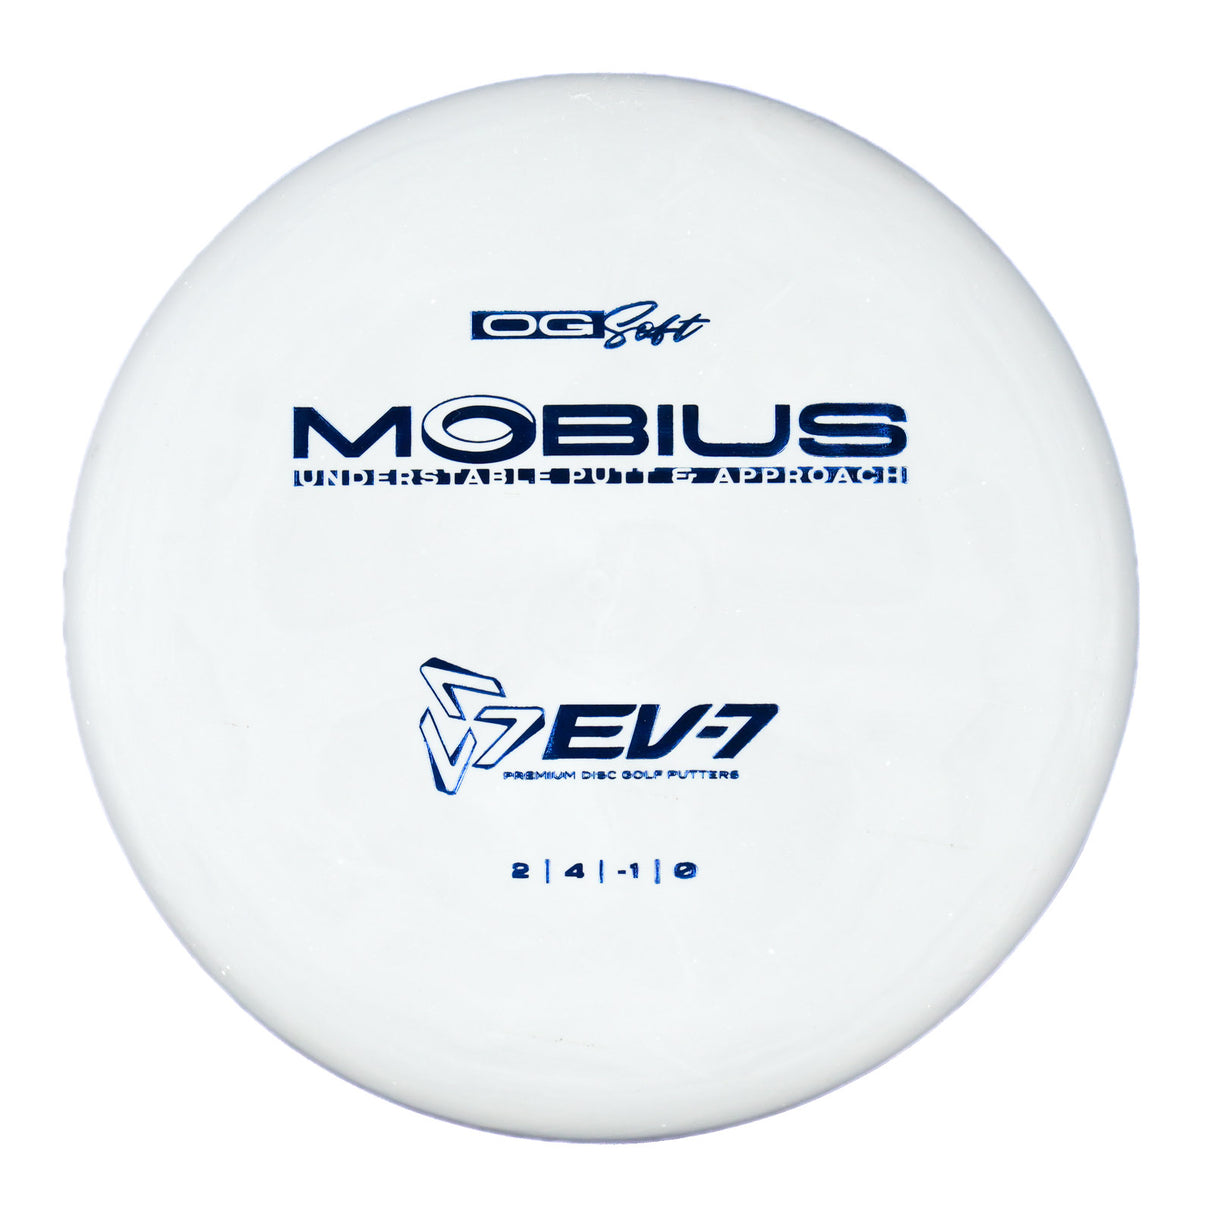 EV-7 Möbius - OG Soft 176g | Style 0002